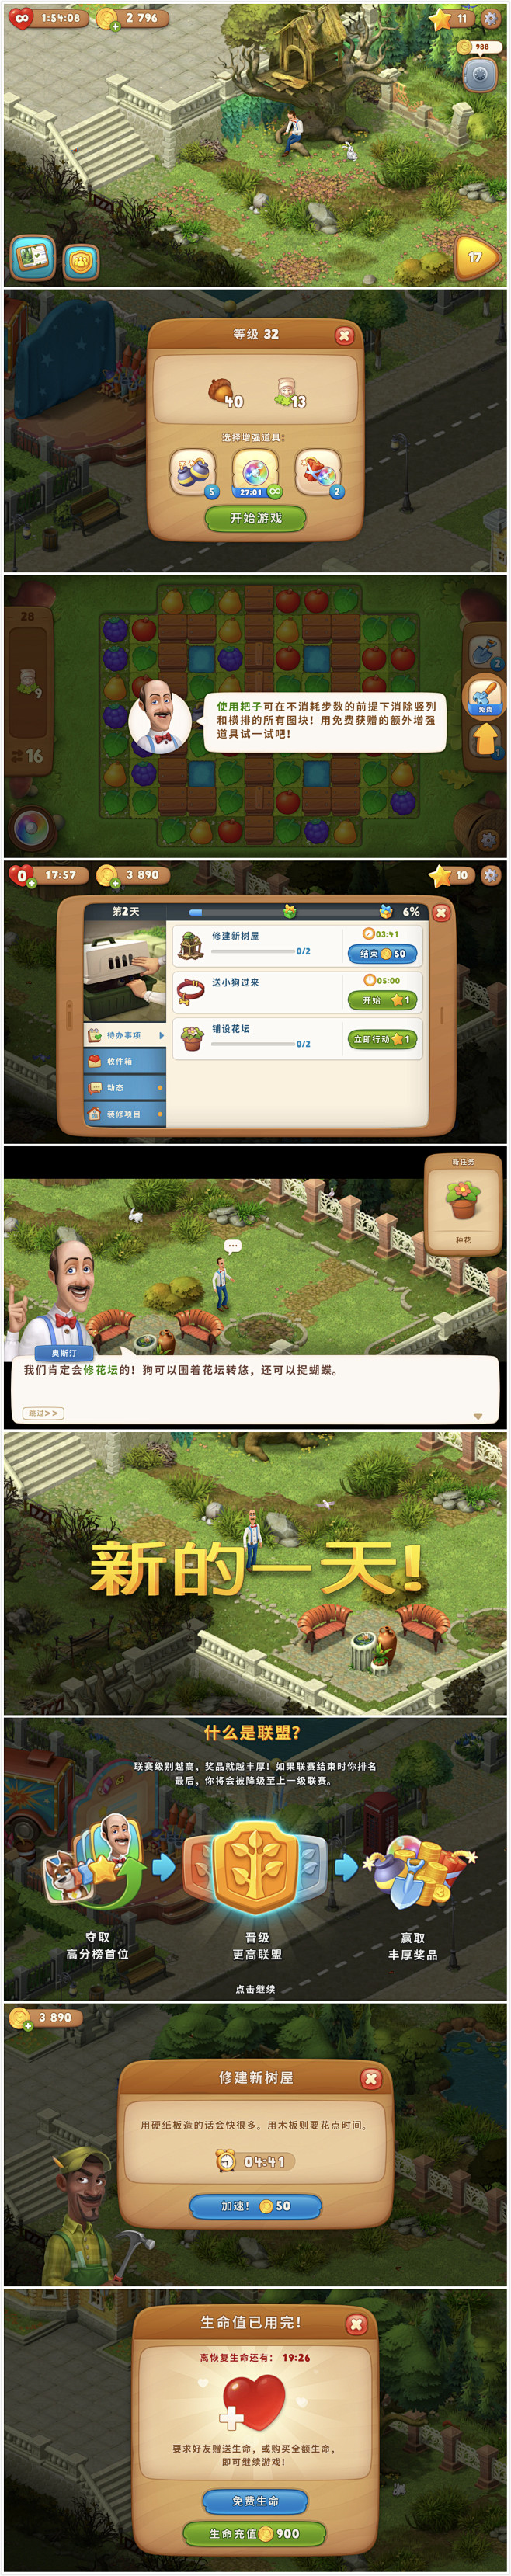 梦幻花园界面UI